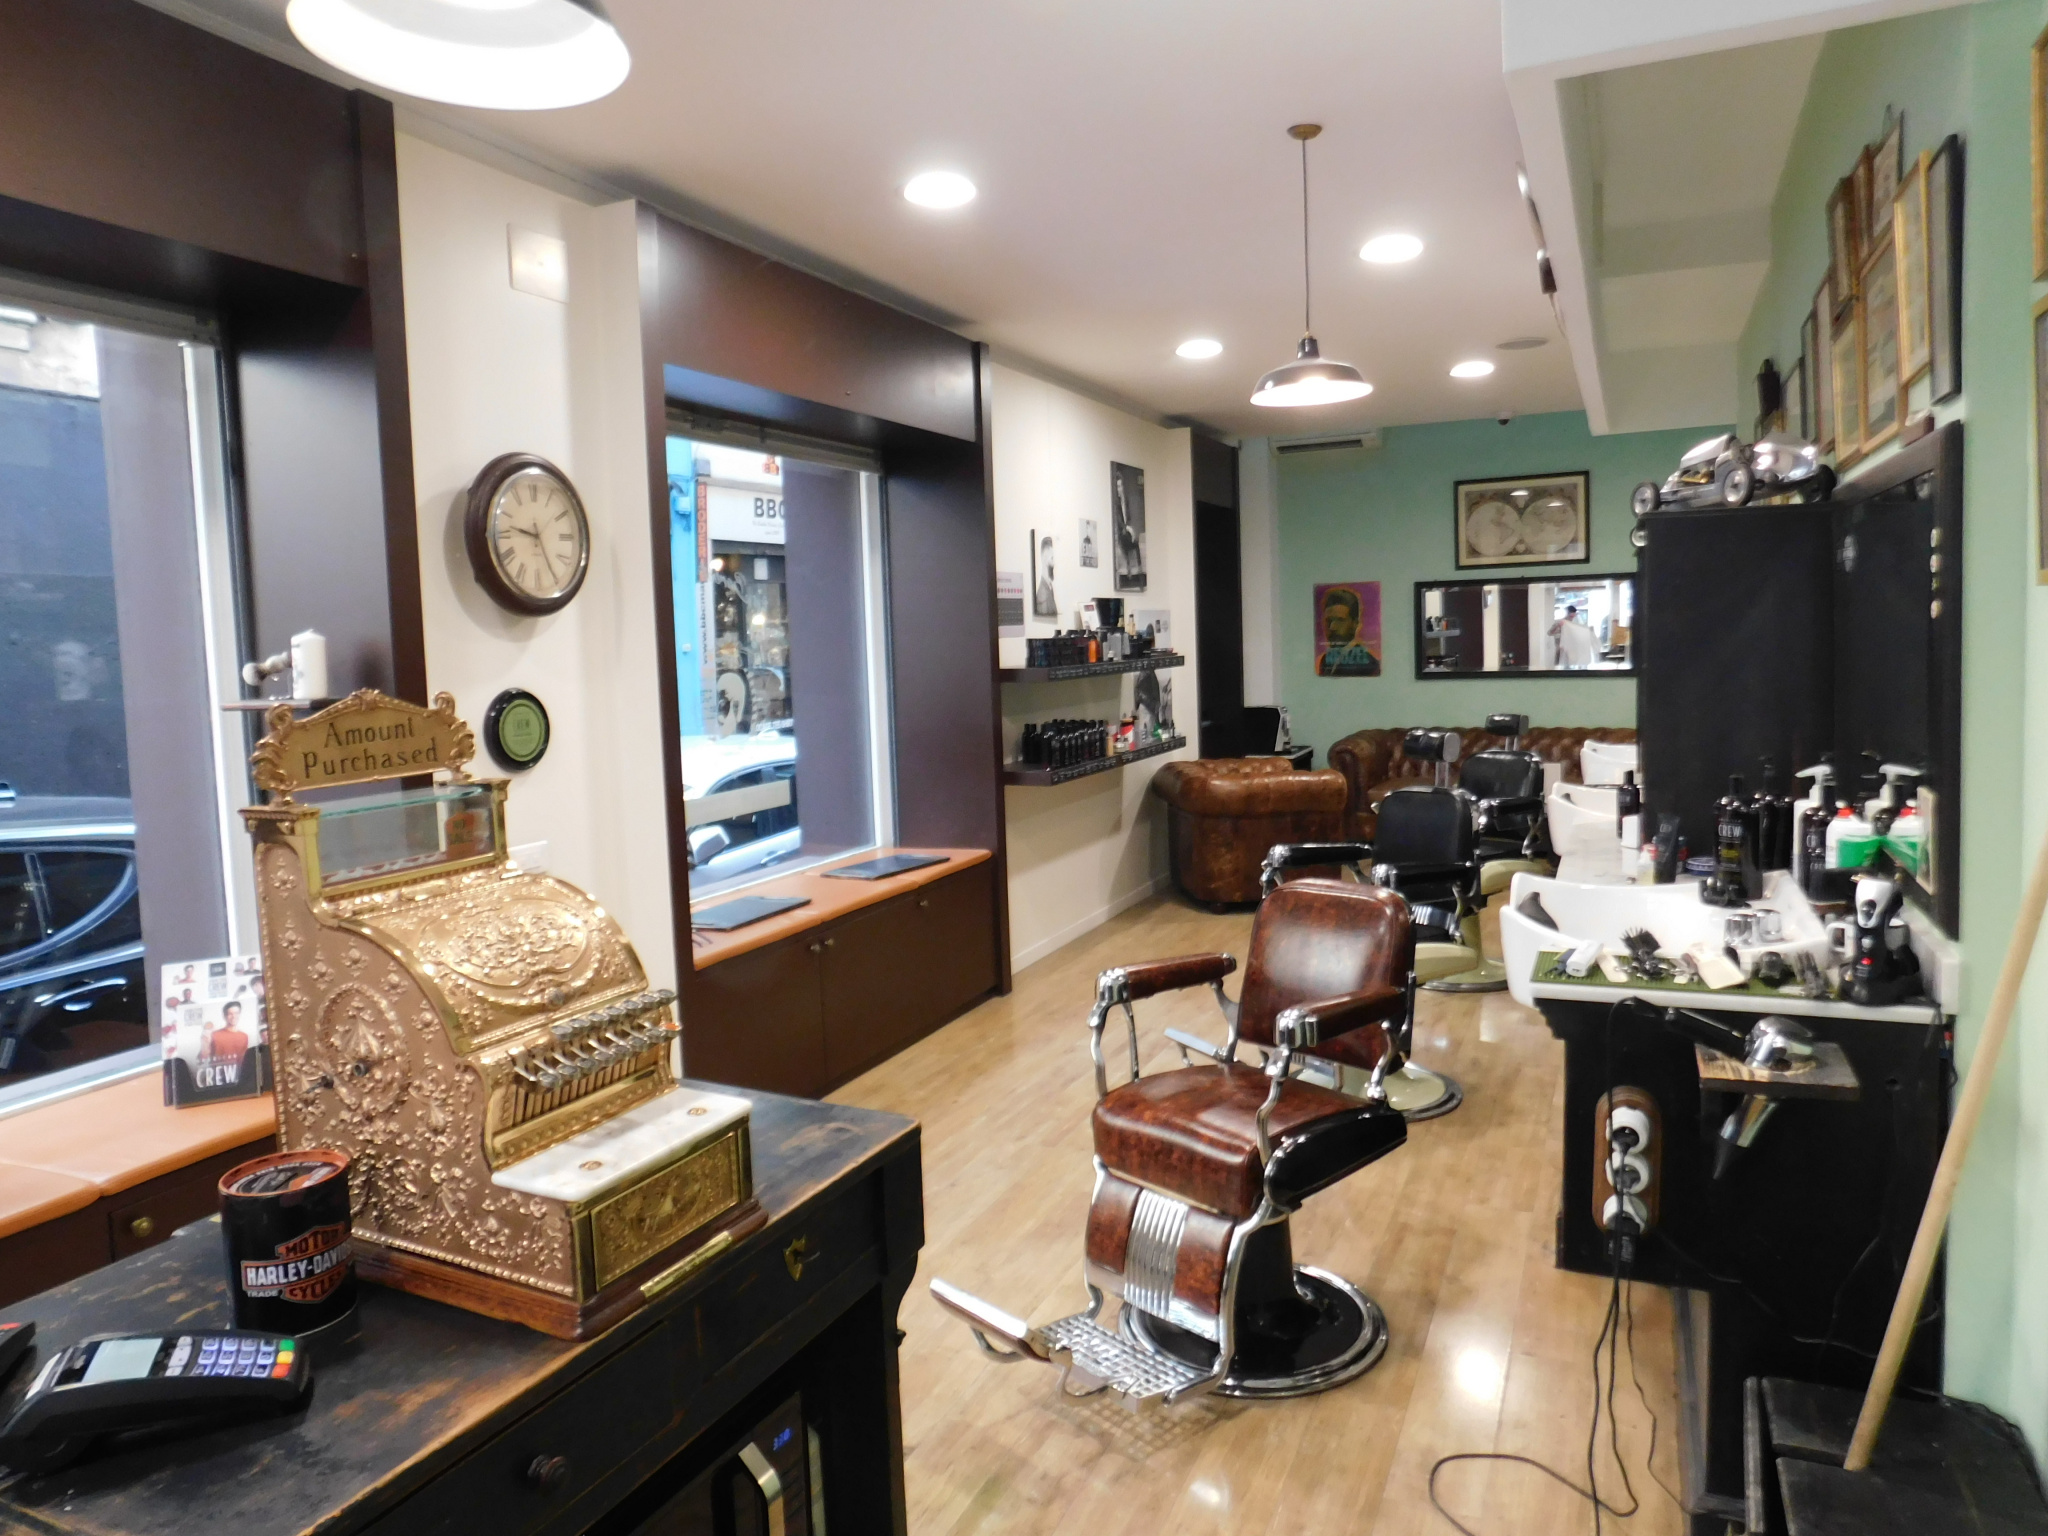 Salon de Barbier et coiffure situé rue Paradis, 13006 Marsei 